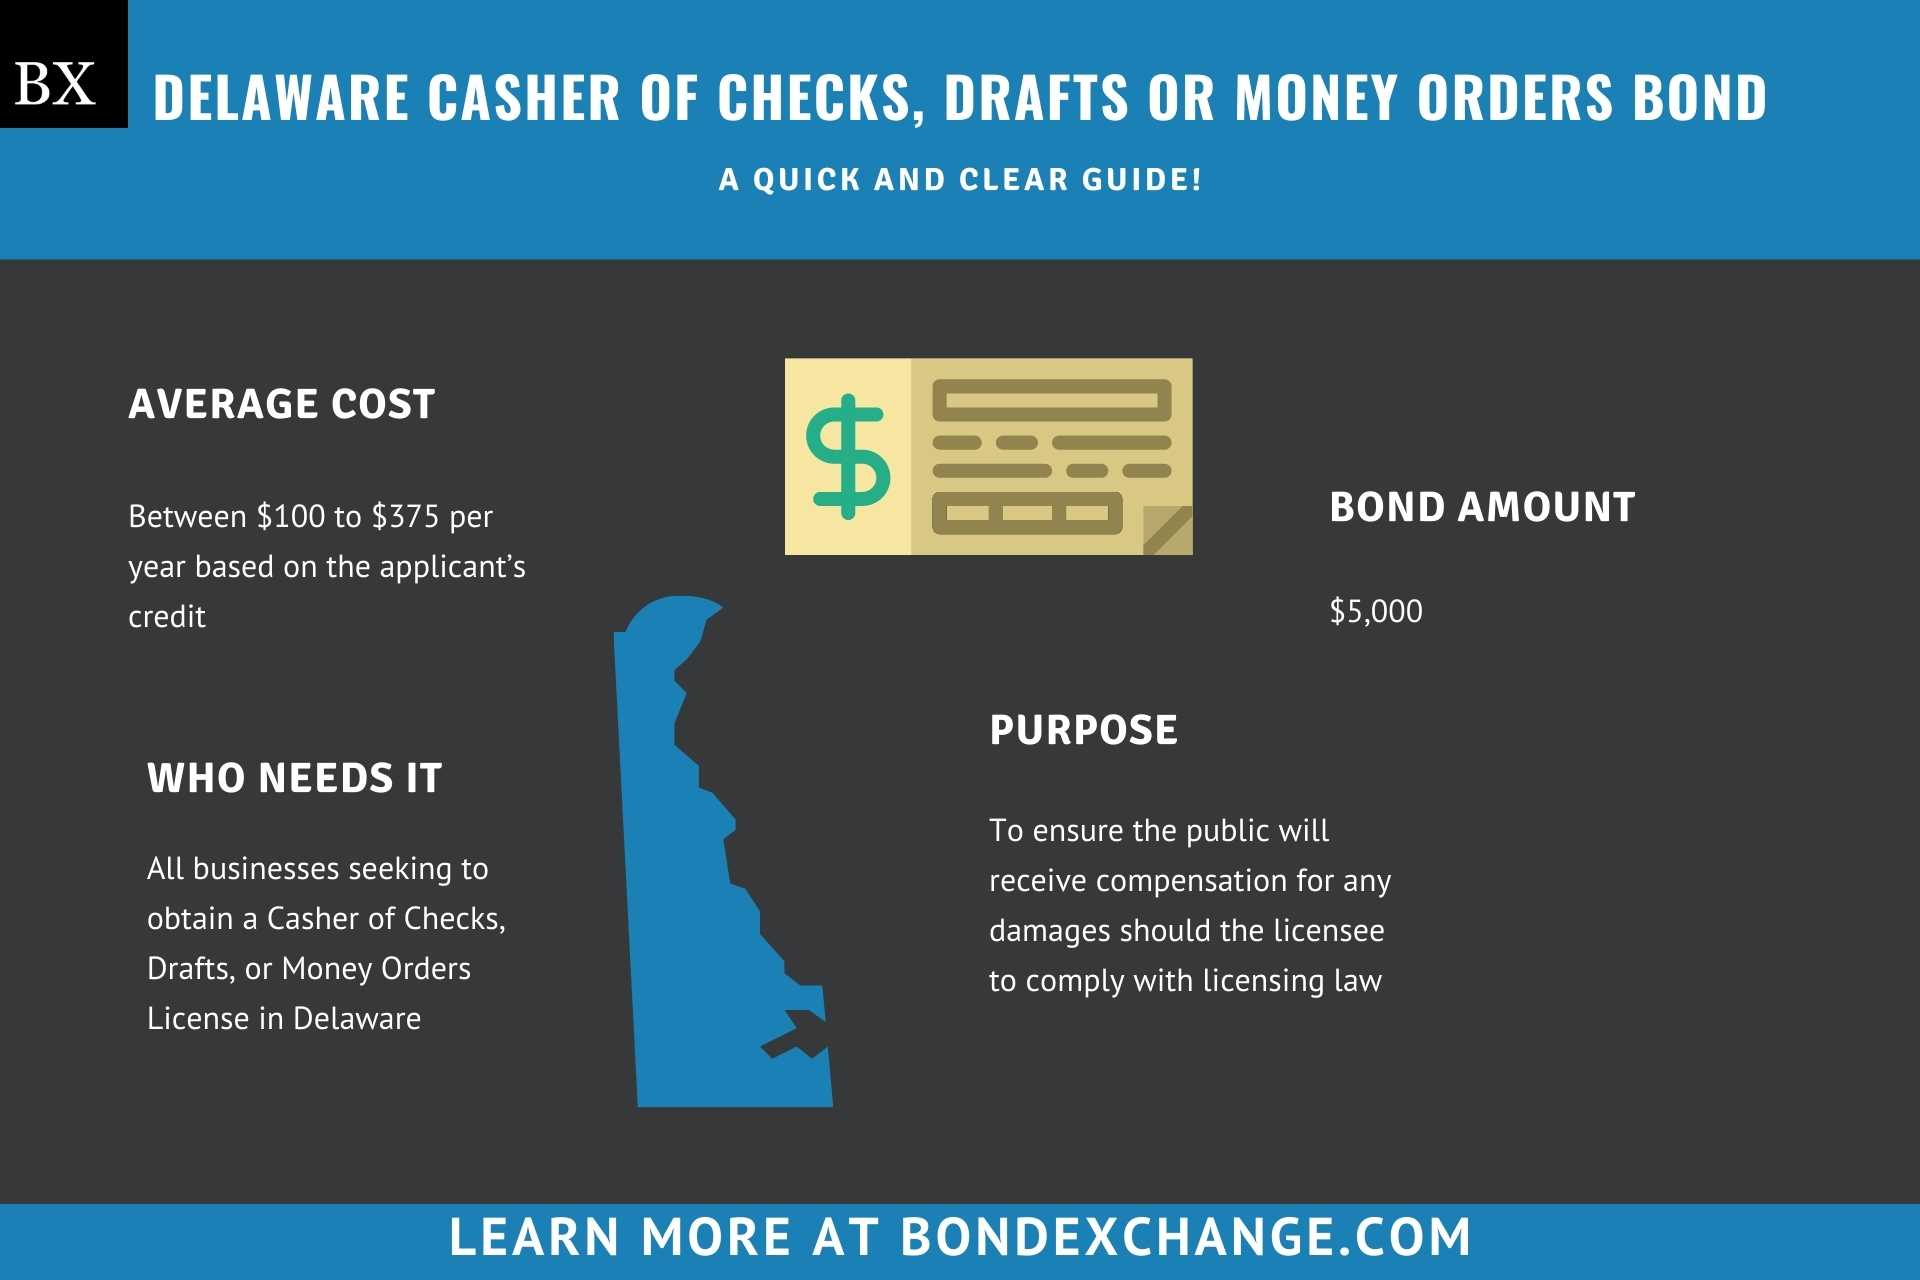 Delaware Casher of Checks, Drafts or Money Orders Bond